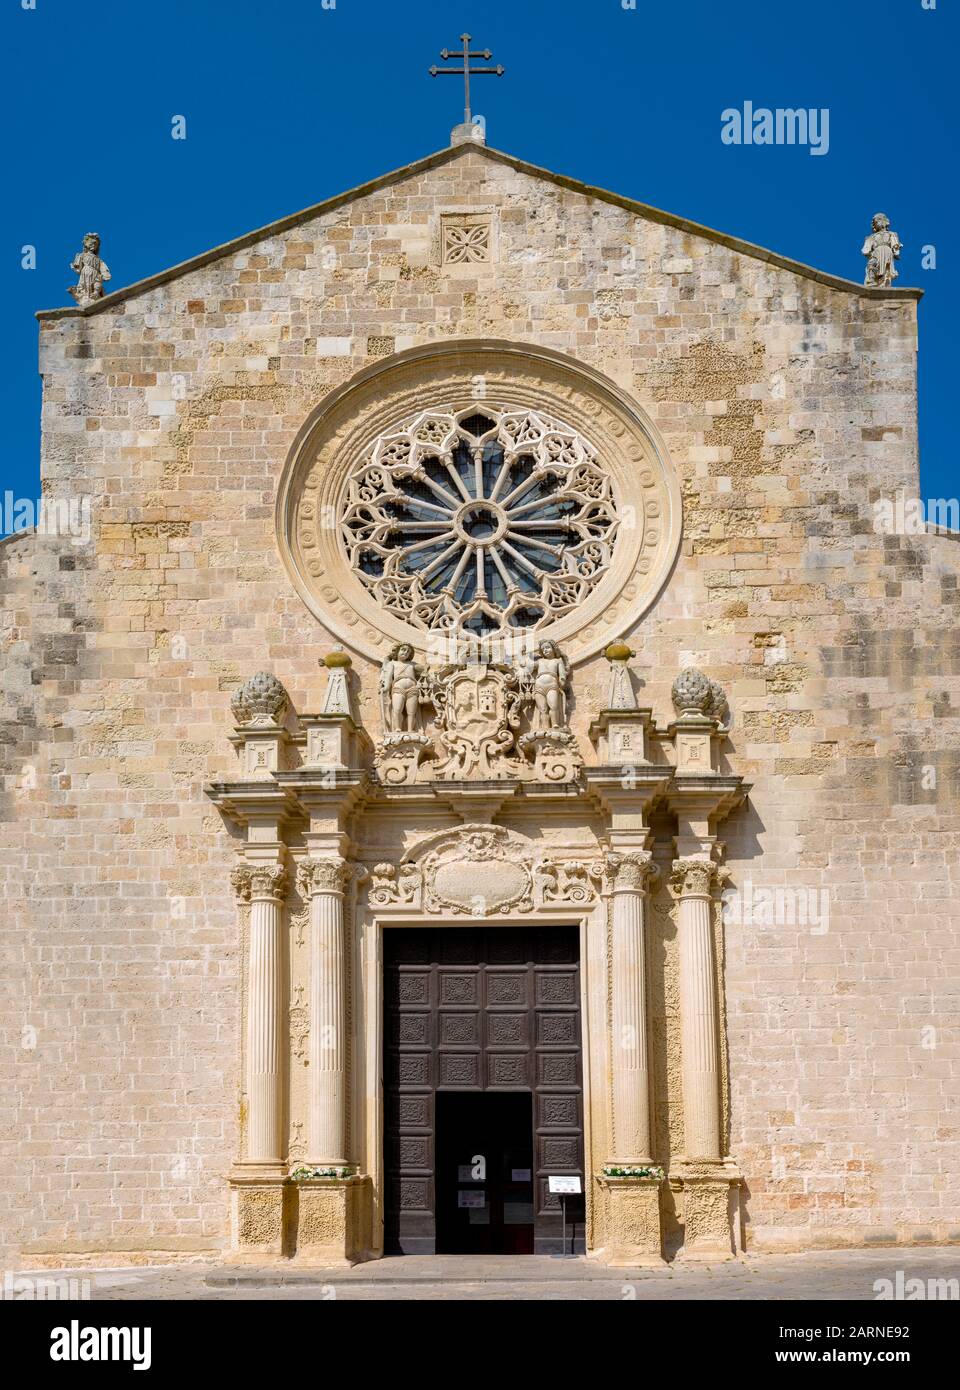 La cathédrale médiévale dans le centre historique d'Otranto, ville côtière d'origine grecque-Messapienne en Italie Banque D'Images